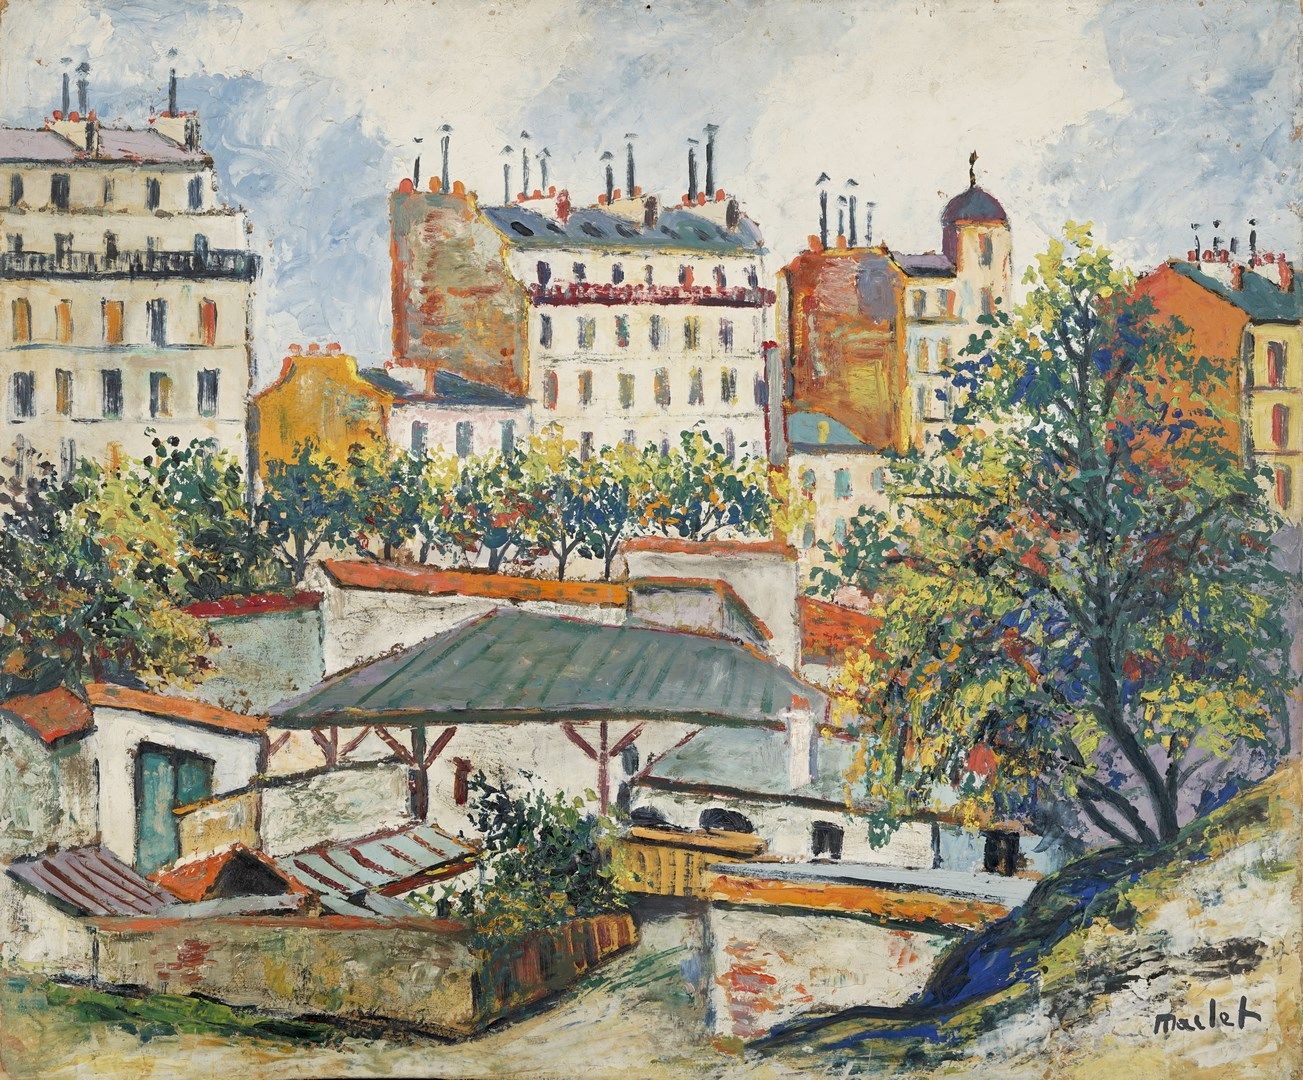 Null MACLET Élisée, 1881-1962年

马奎斯，1923年

木板油画（底部扭曲，背面有潮湿的痕迹），右下角有签名，背面有1983年在日&hellip;